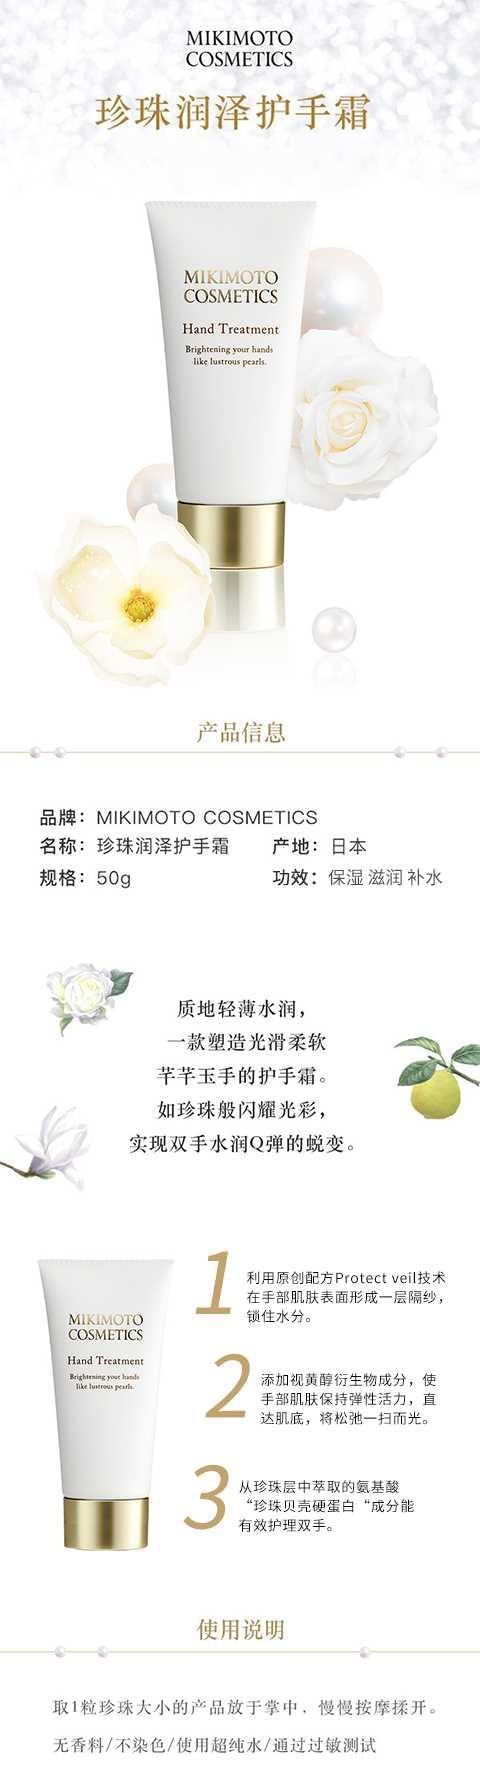 【日本直效郵件】MIKIMOTO COSMETICS禦木本 珍珠潤澤修護提亮保濕滋養護手霜50g